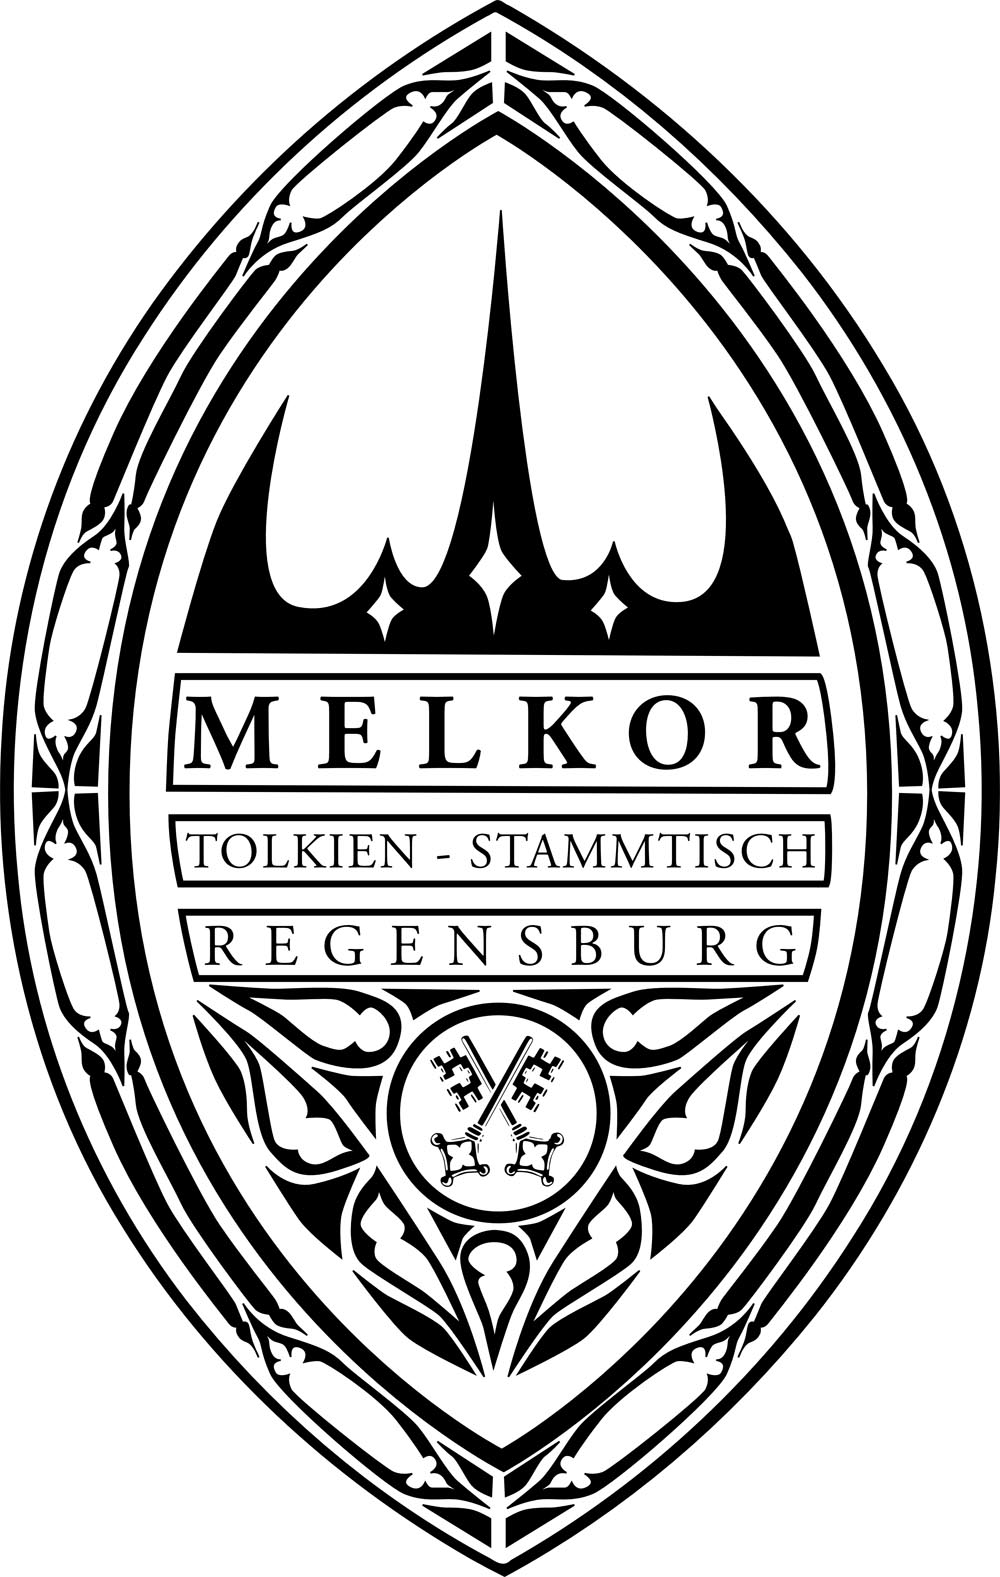 Tolkien Stammtisch Regensburg